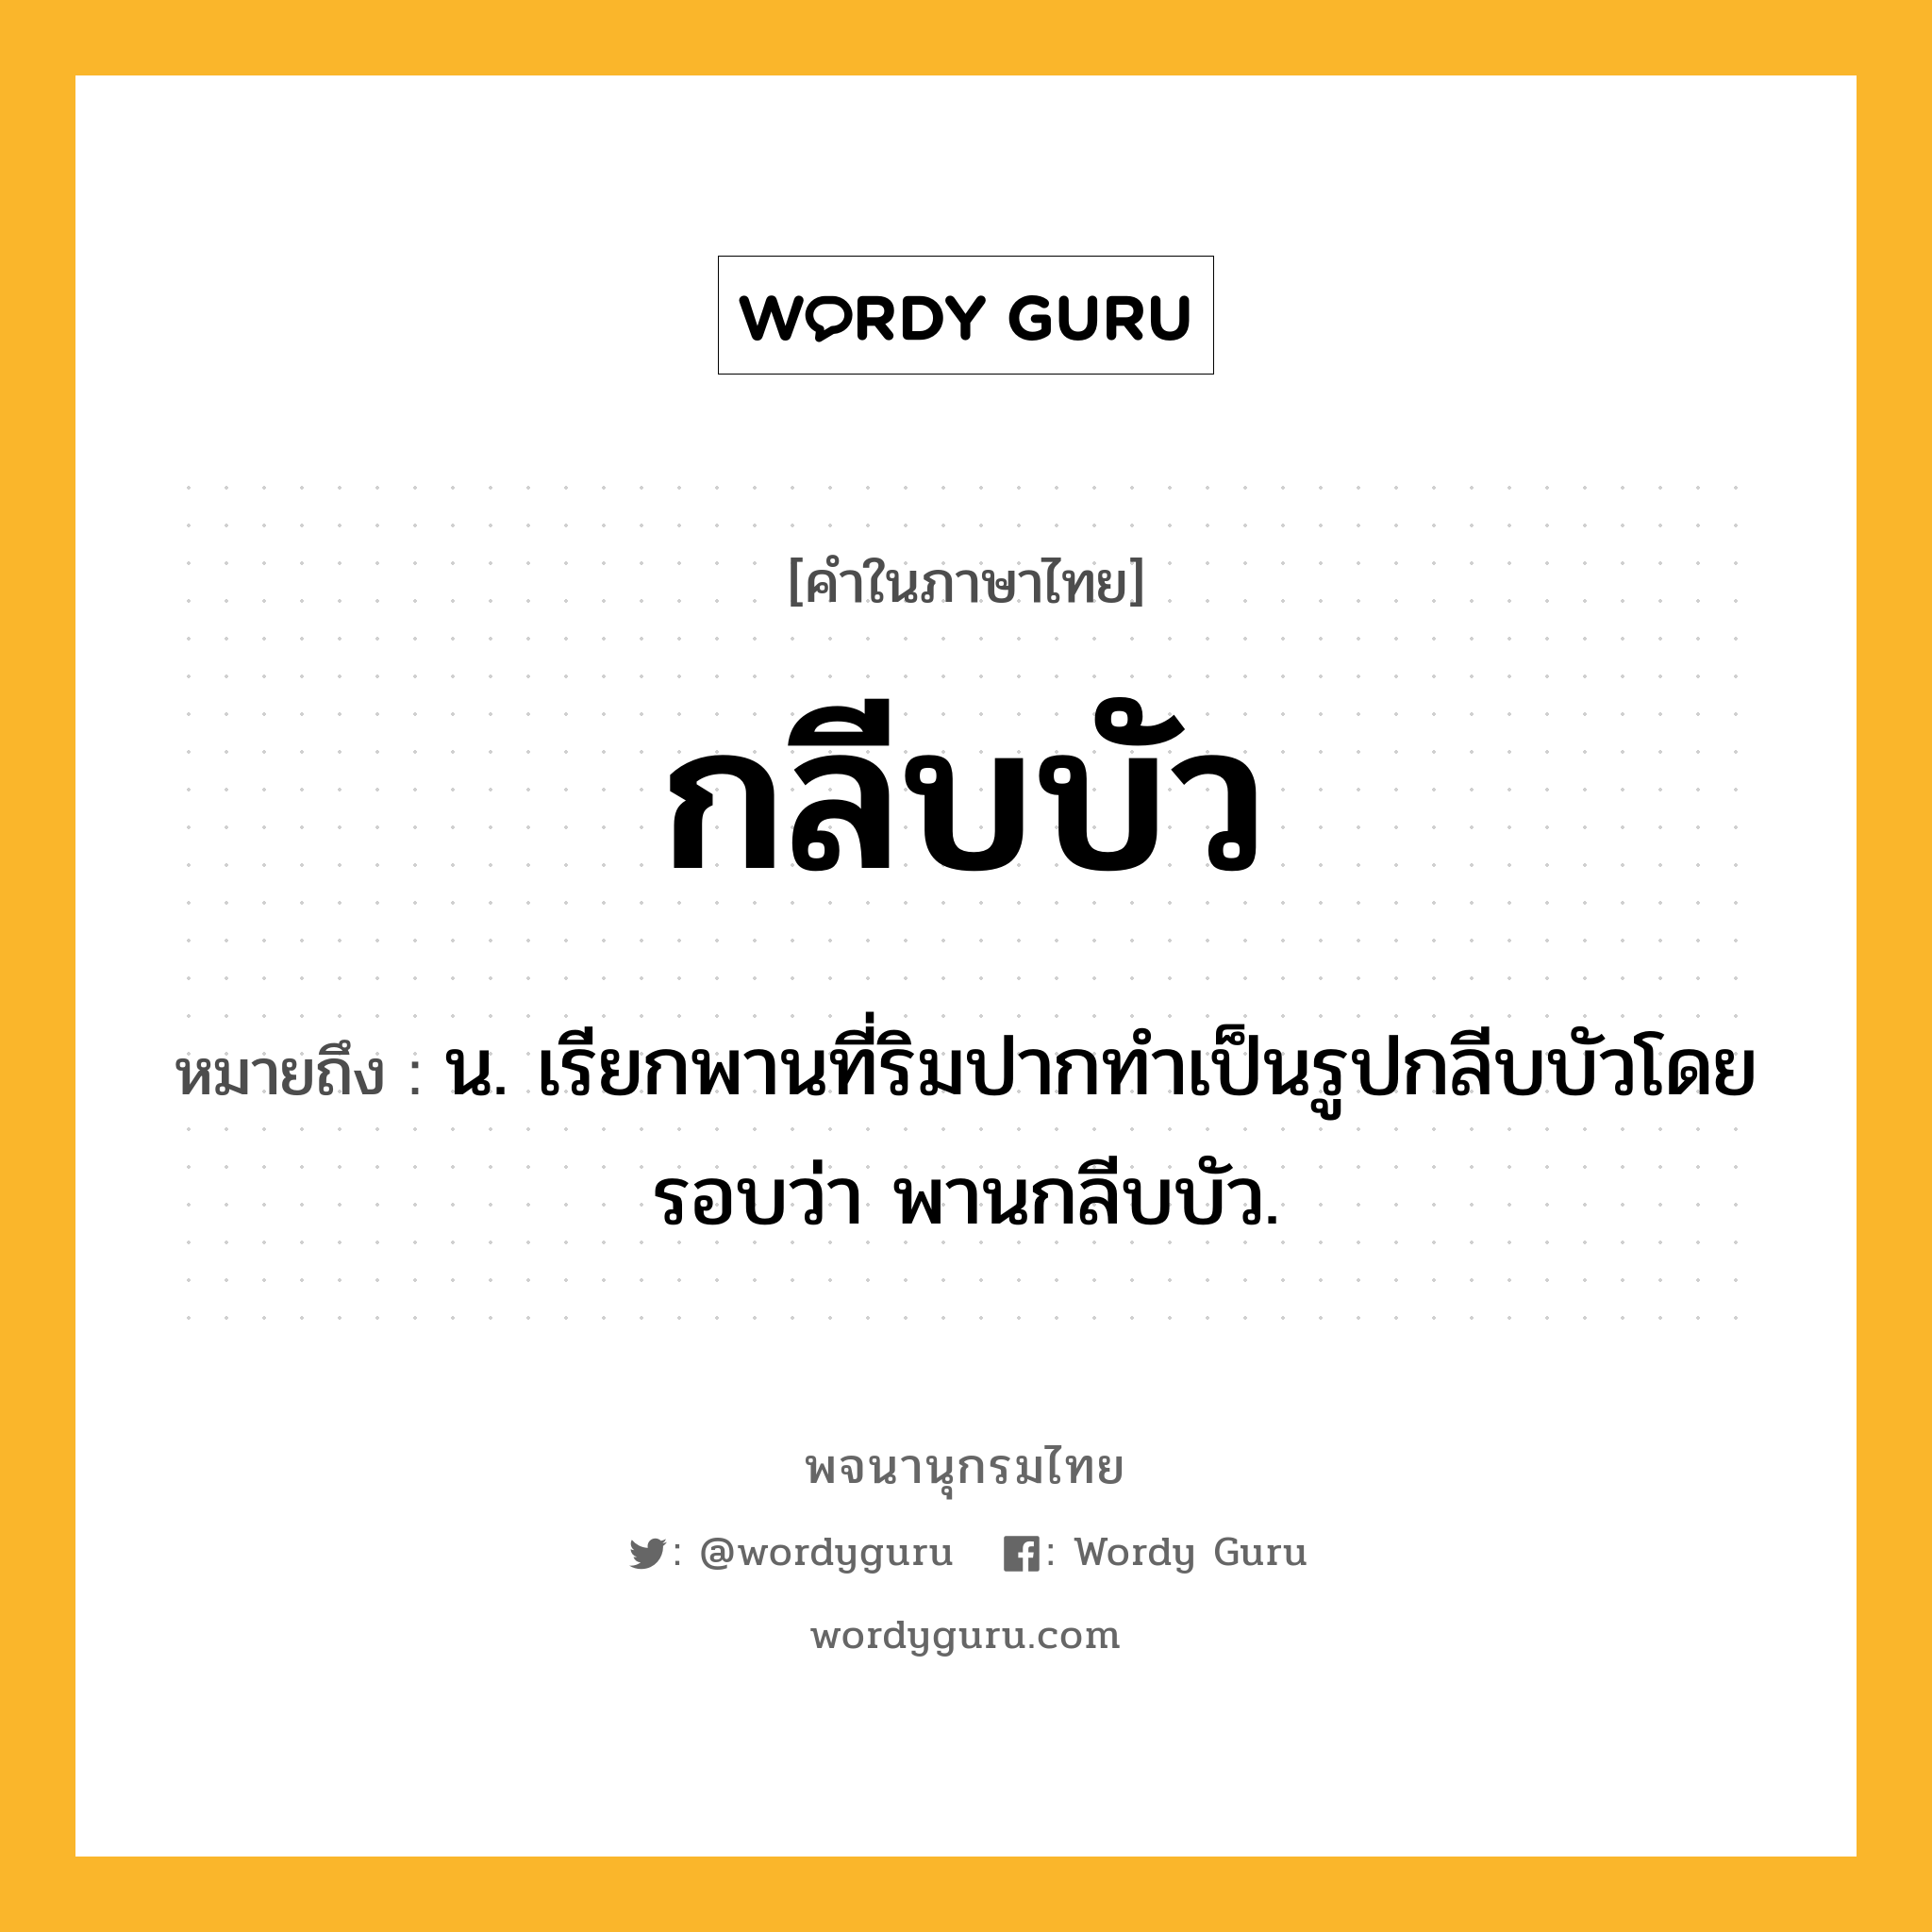 กลีบบัว ความหมาย หมายถึงอะไร?, คำในภาษาไทย กลีบบัว หมายถึง น. เรียกพานที่ริมปากทําเป็นรูปกลีบบัวโดยรอบว่า พานกลีบบัว.